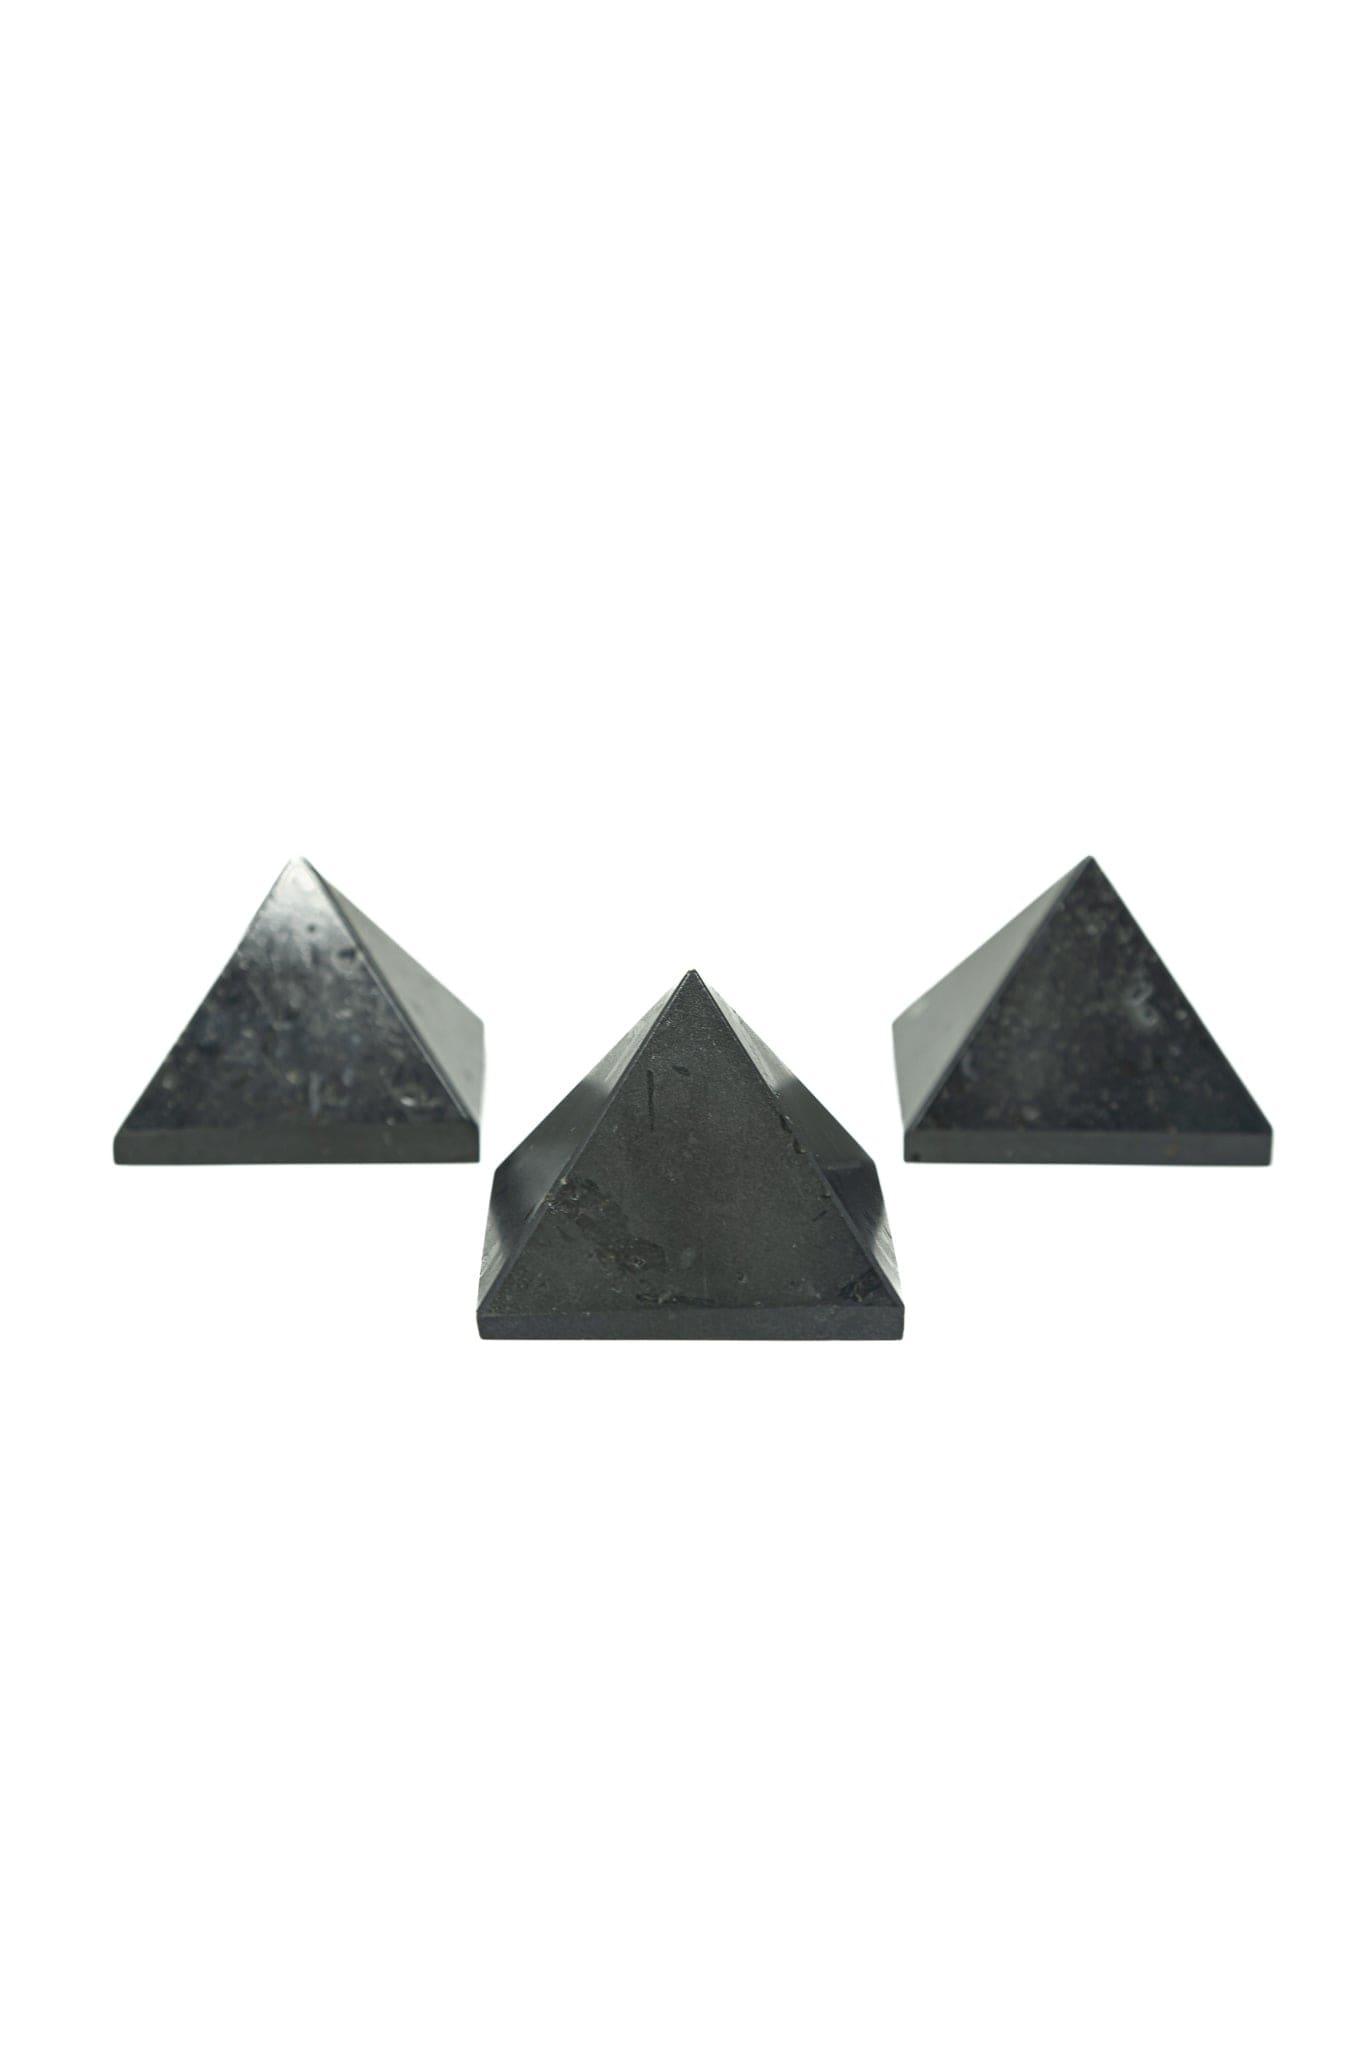 Black Tourmaline Pyramid Black Tourmaline